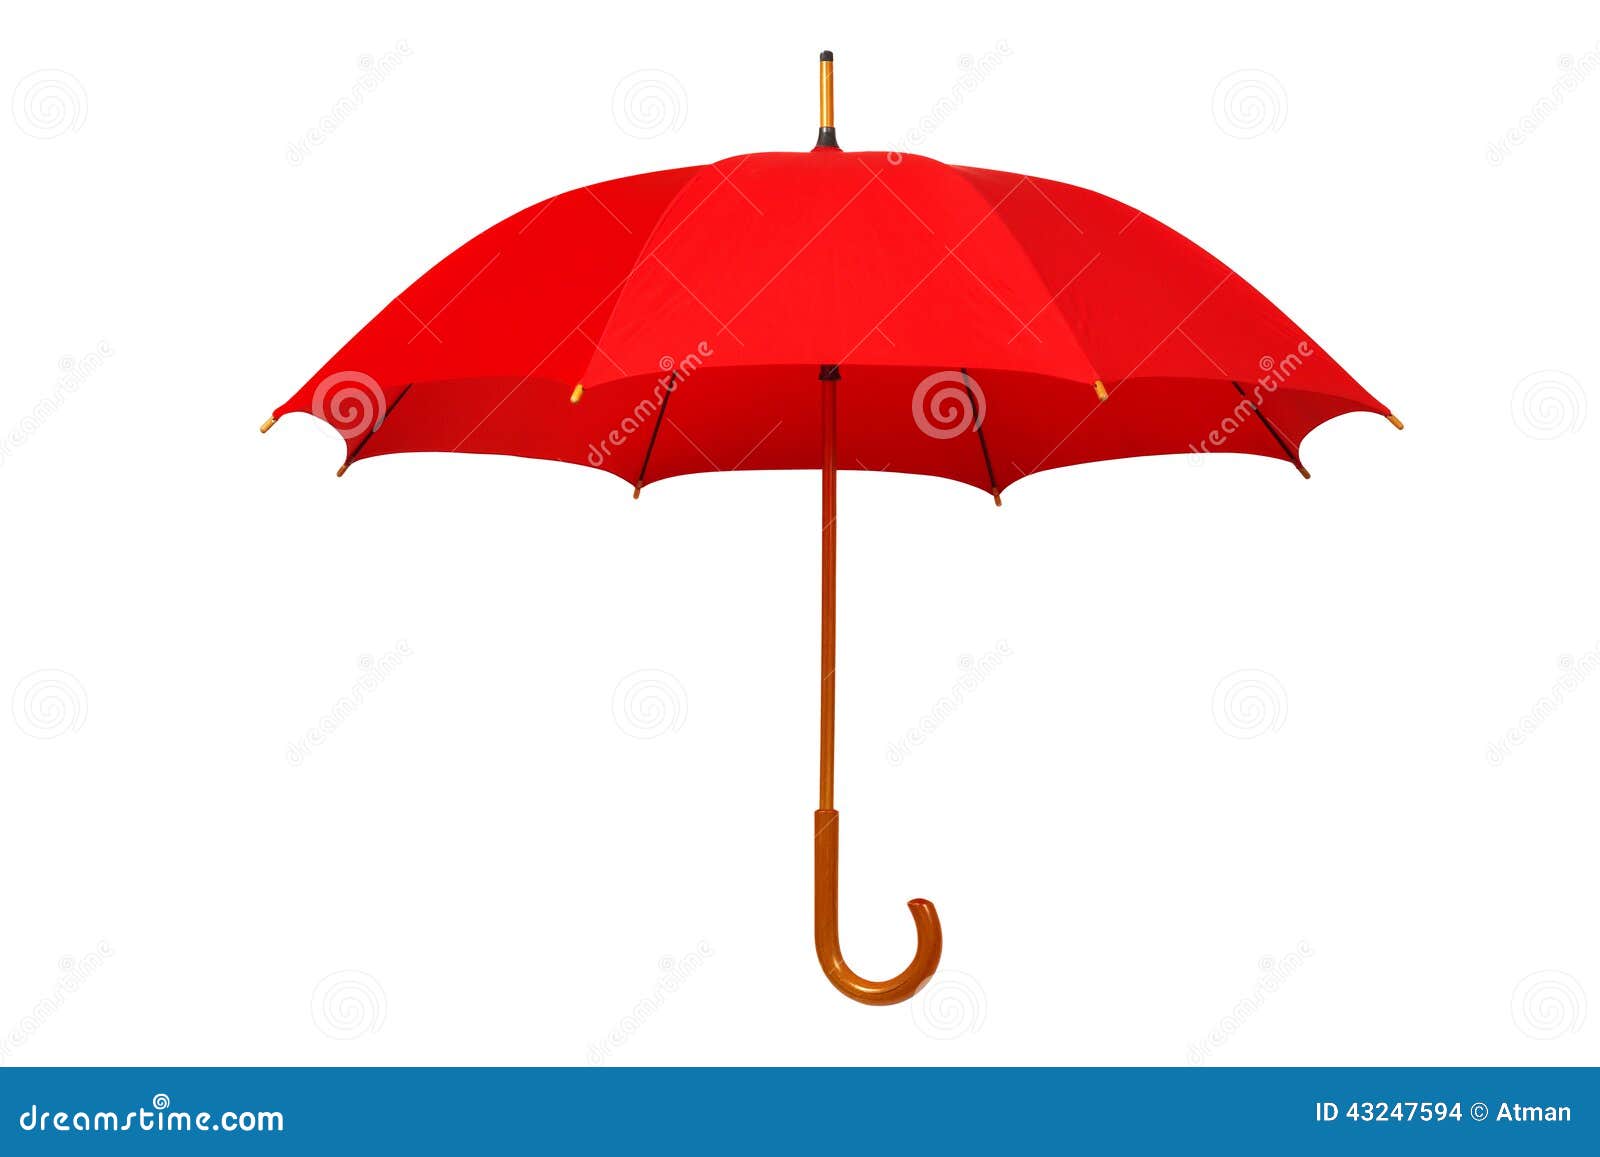 红色雨伞到放在地面上与青色的地面和背景形成鲜明的对比